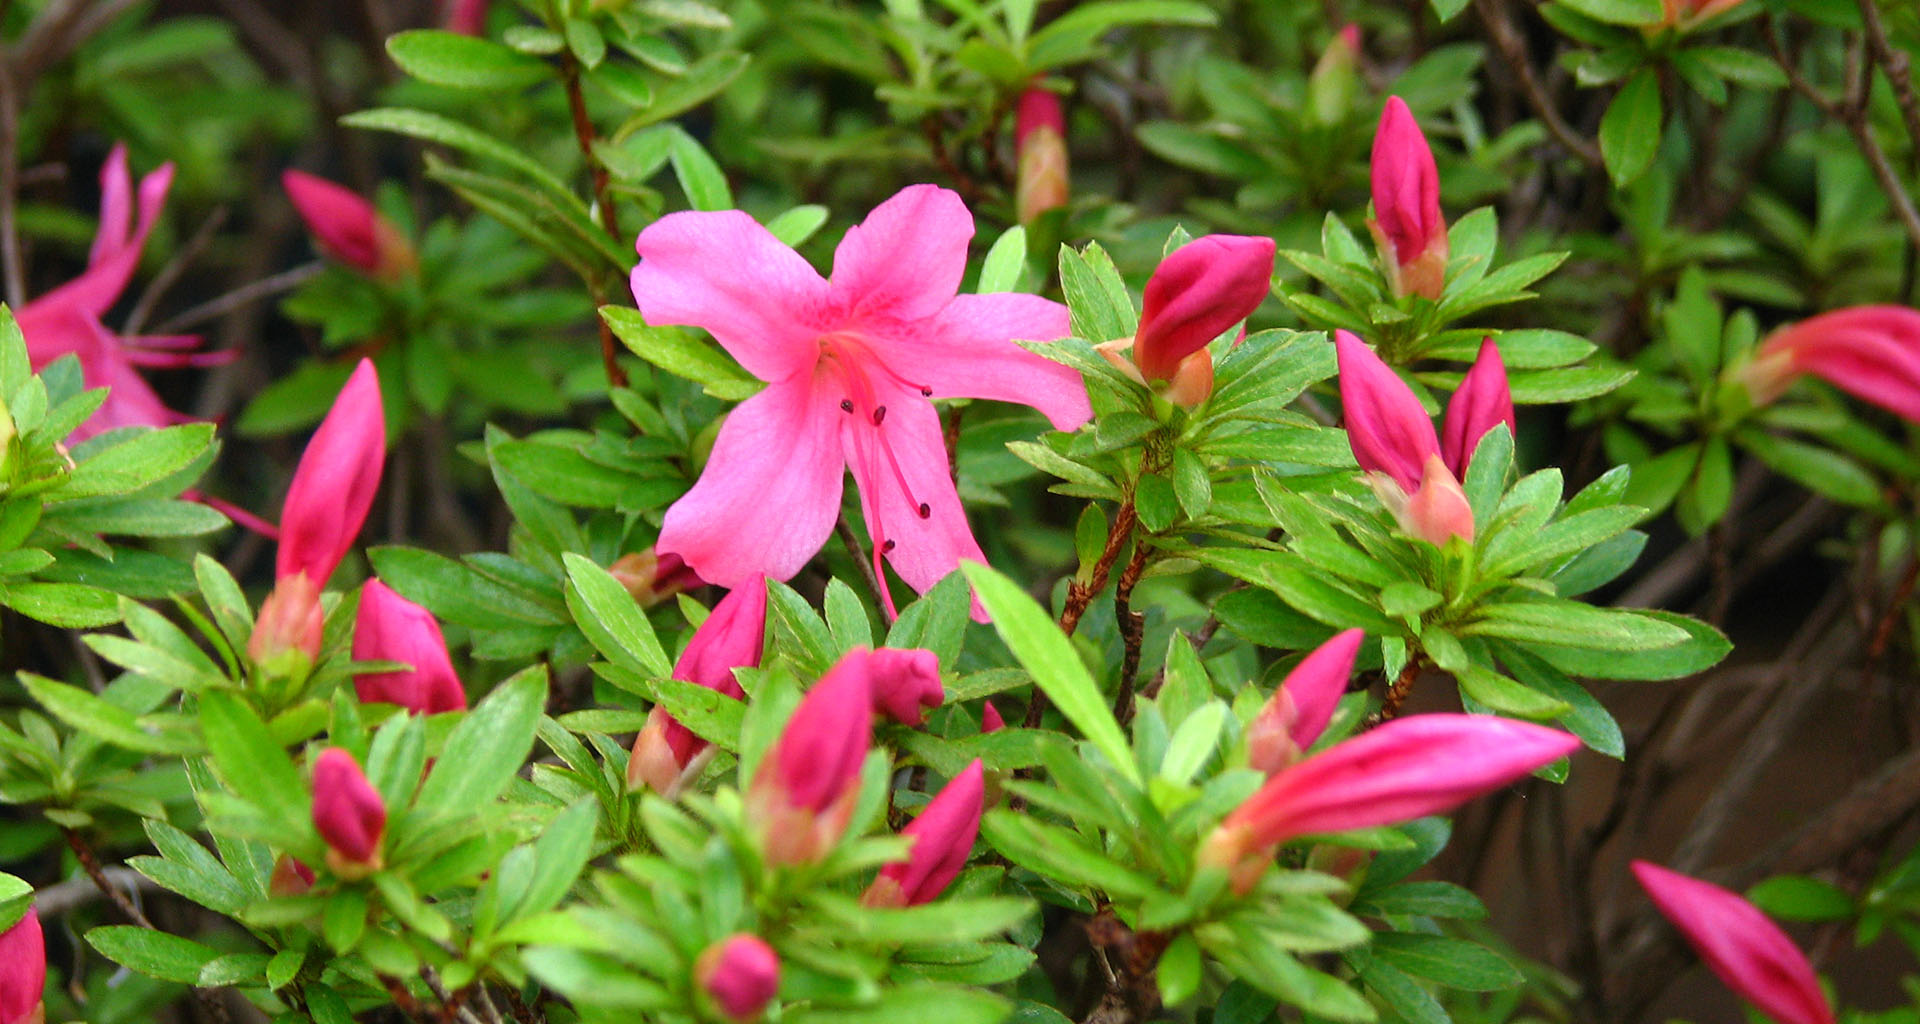 Jardim cor-de-rosa: descubra quais espécies usar – Jardim das Ideias STIHL